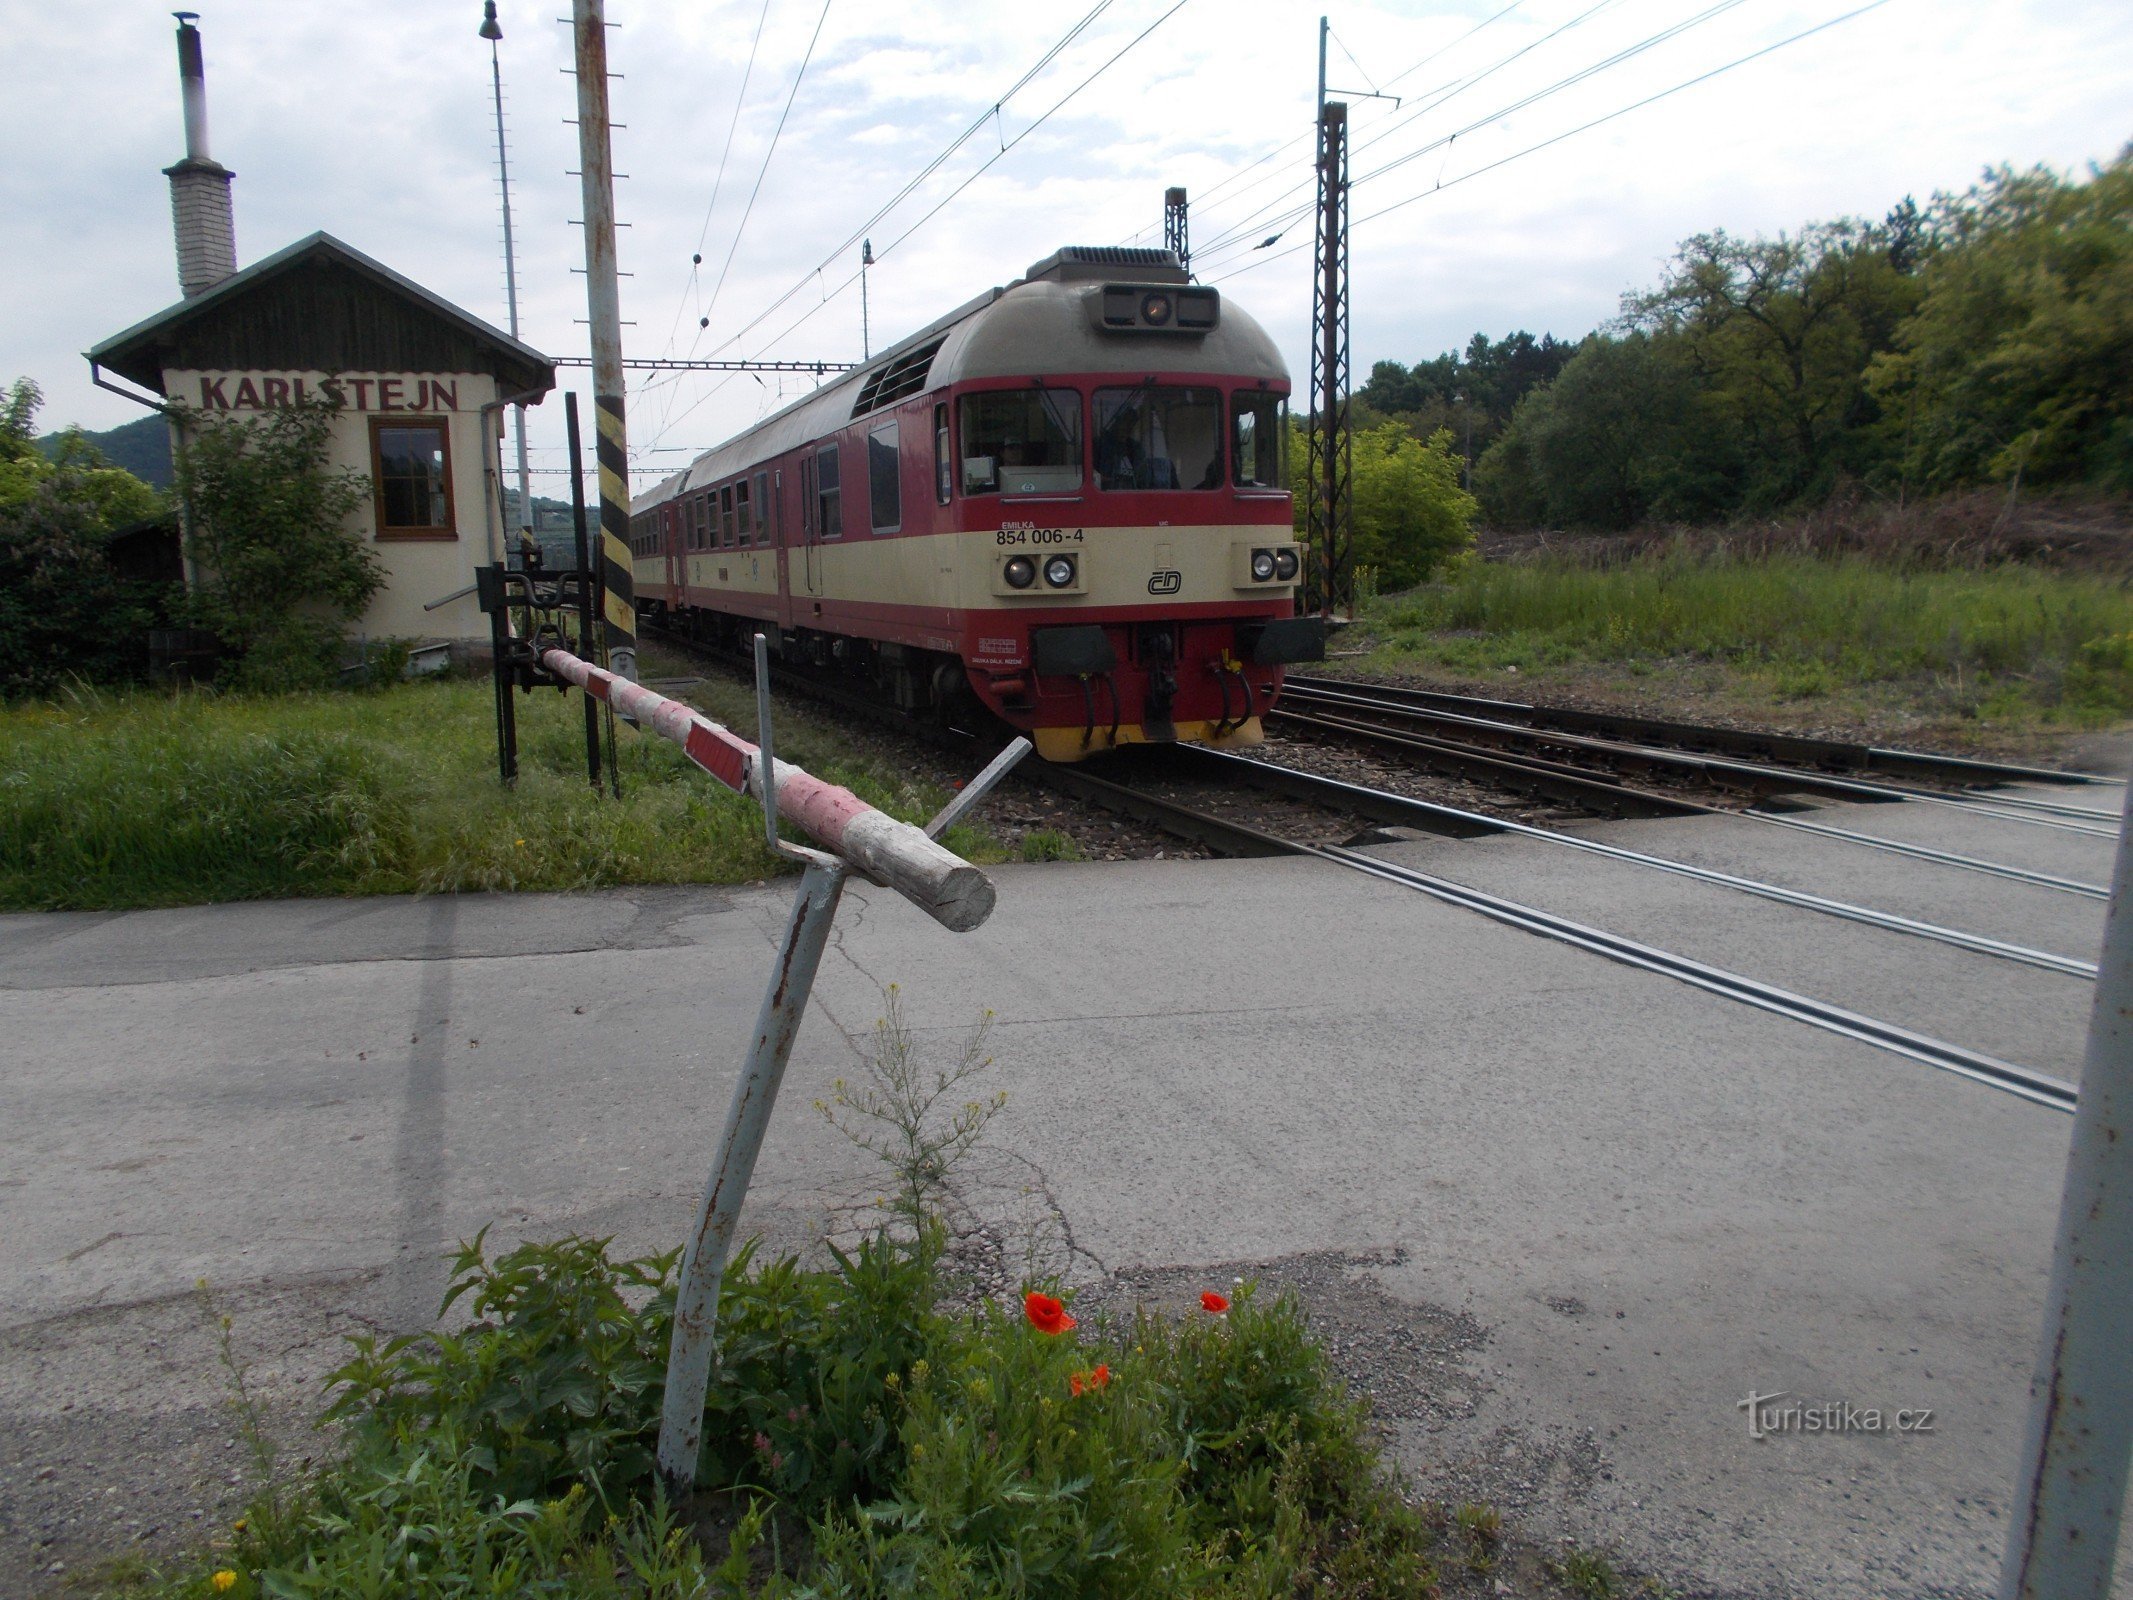 Szlabany mechaniczne na Karlštejnie i pociąg do Beroun.